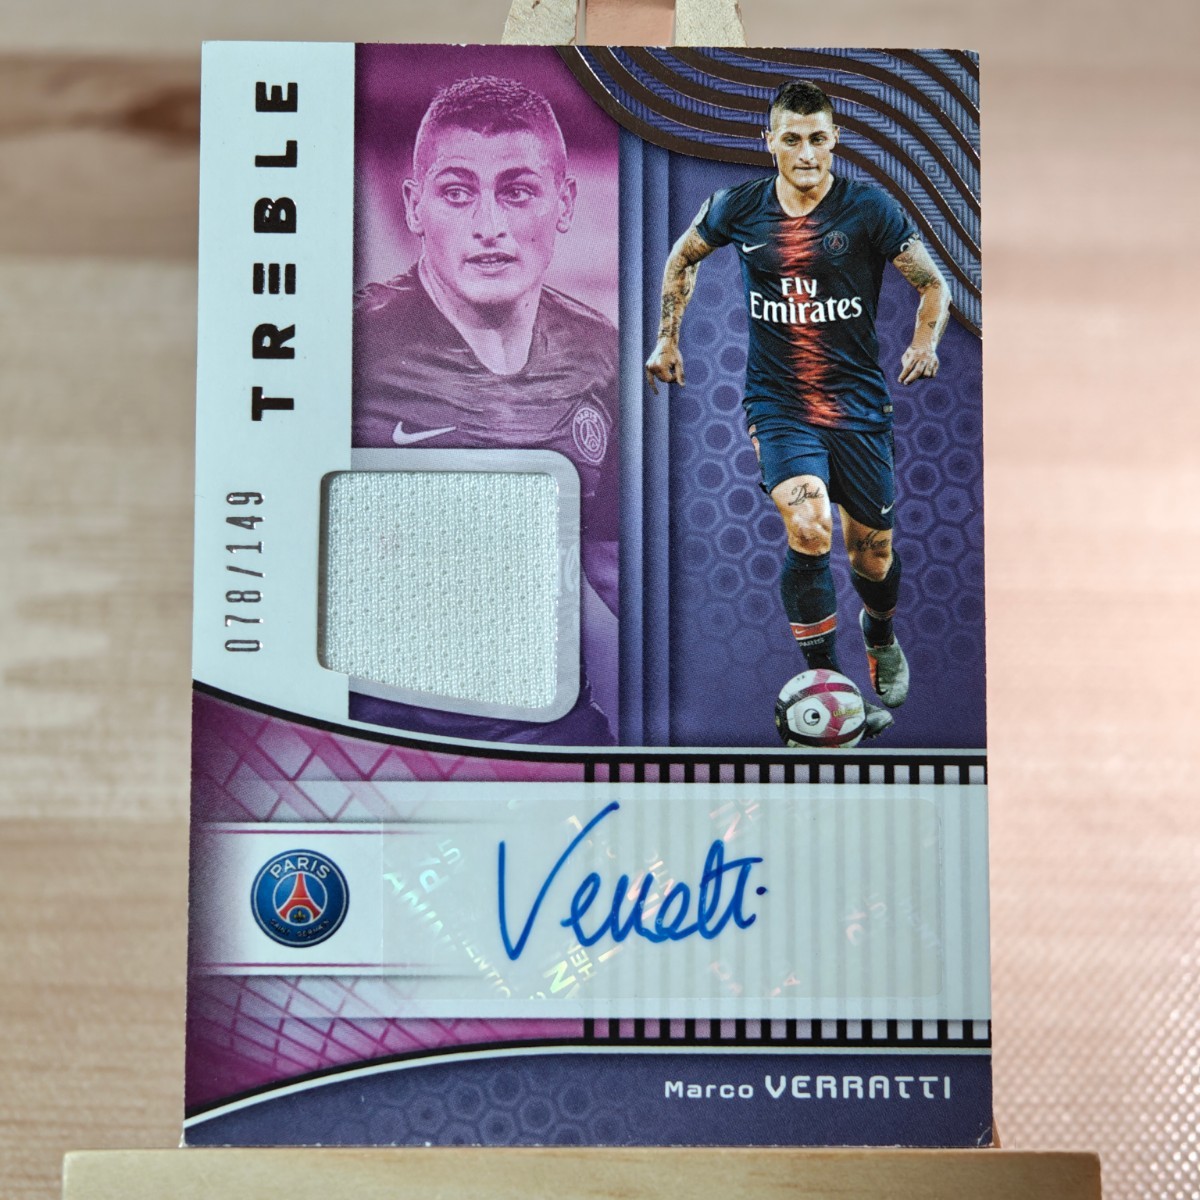 149枚限定 マルコ・ヴェッラッティ 2018-19 Panini Treble Soccer Jersey Autographs Marco Verratti PSG 078/149 直筆サインカード_画像1